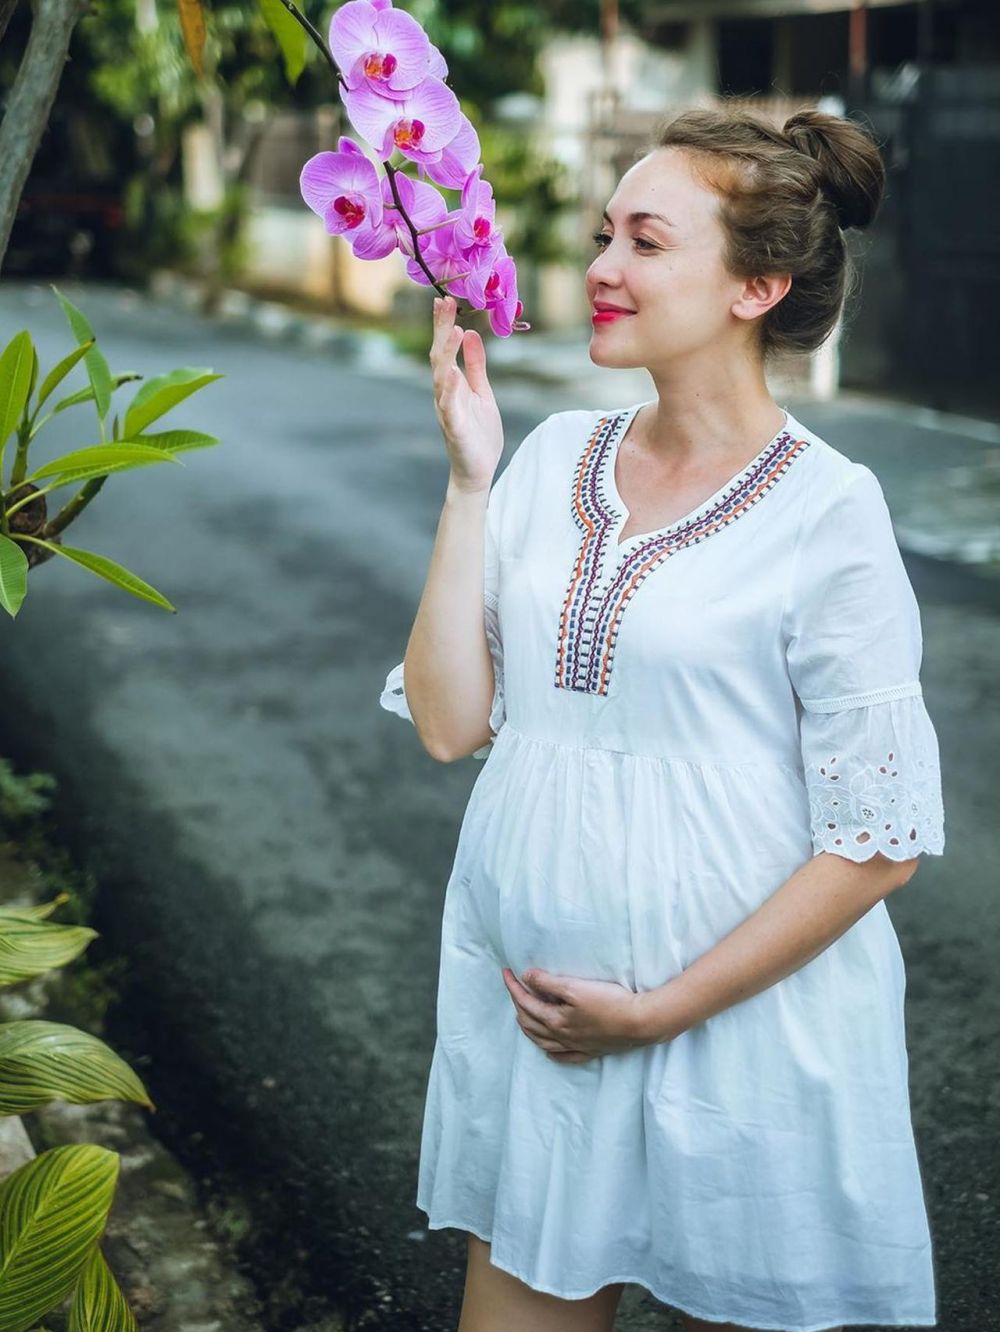 5 Gaya Rianti Cartwright rayakan 7 bulan kehamilan, simpel banget